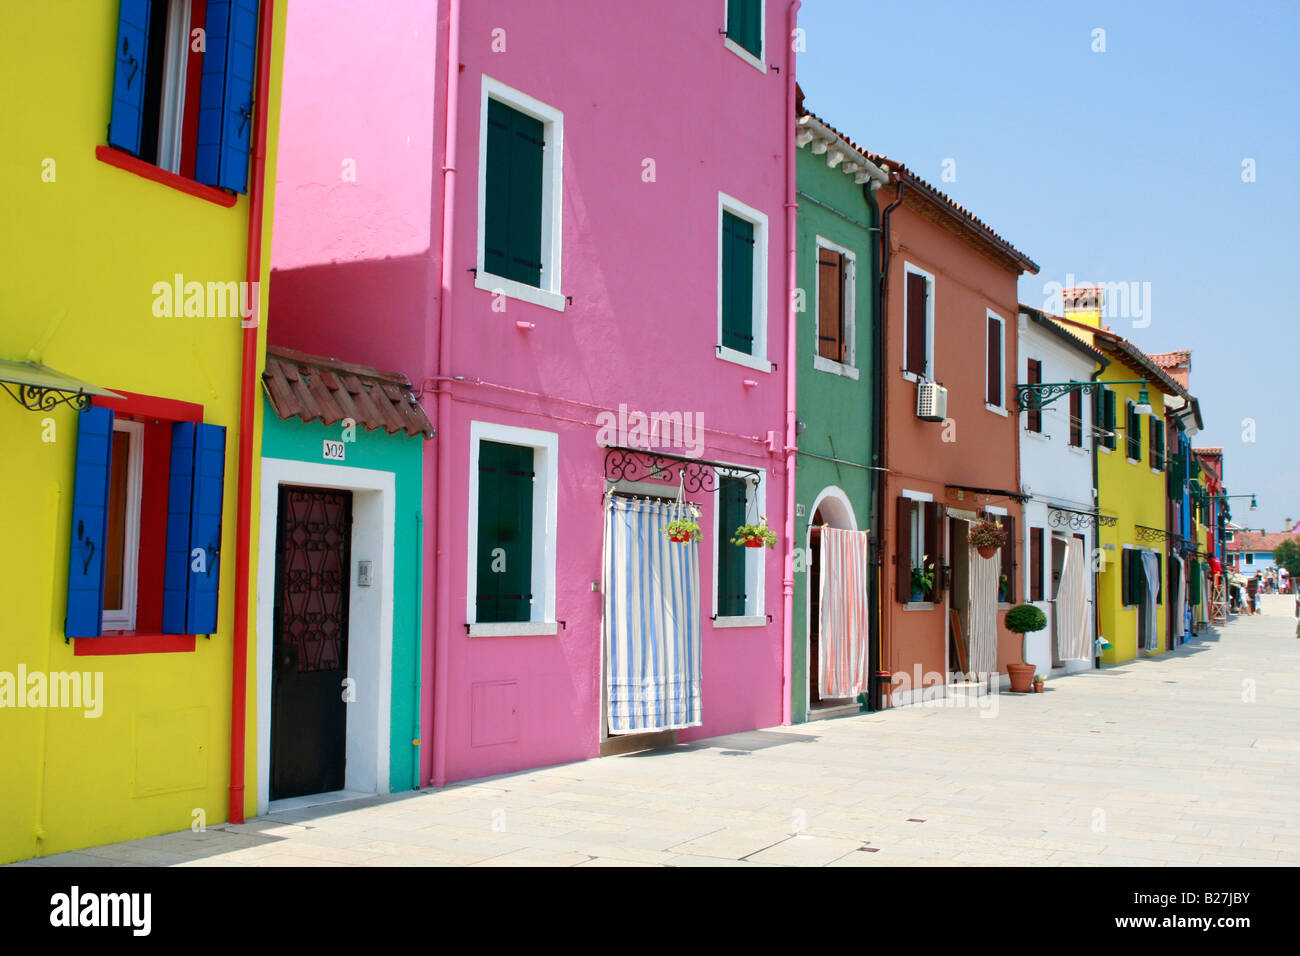 Tipico vividamente colorate case dipinte lungo le strade e canali del popolare isola veneziana di Burano Foto Stock